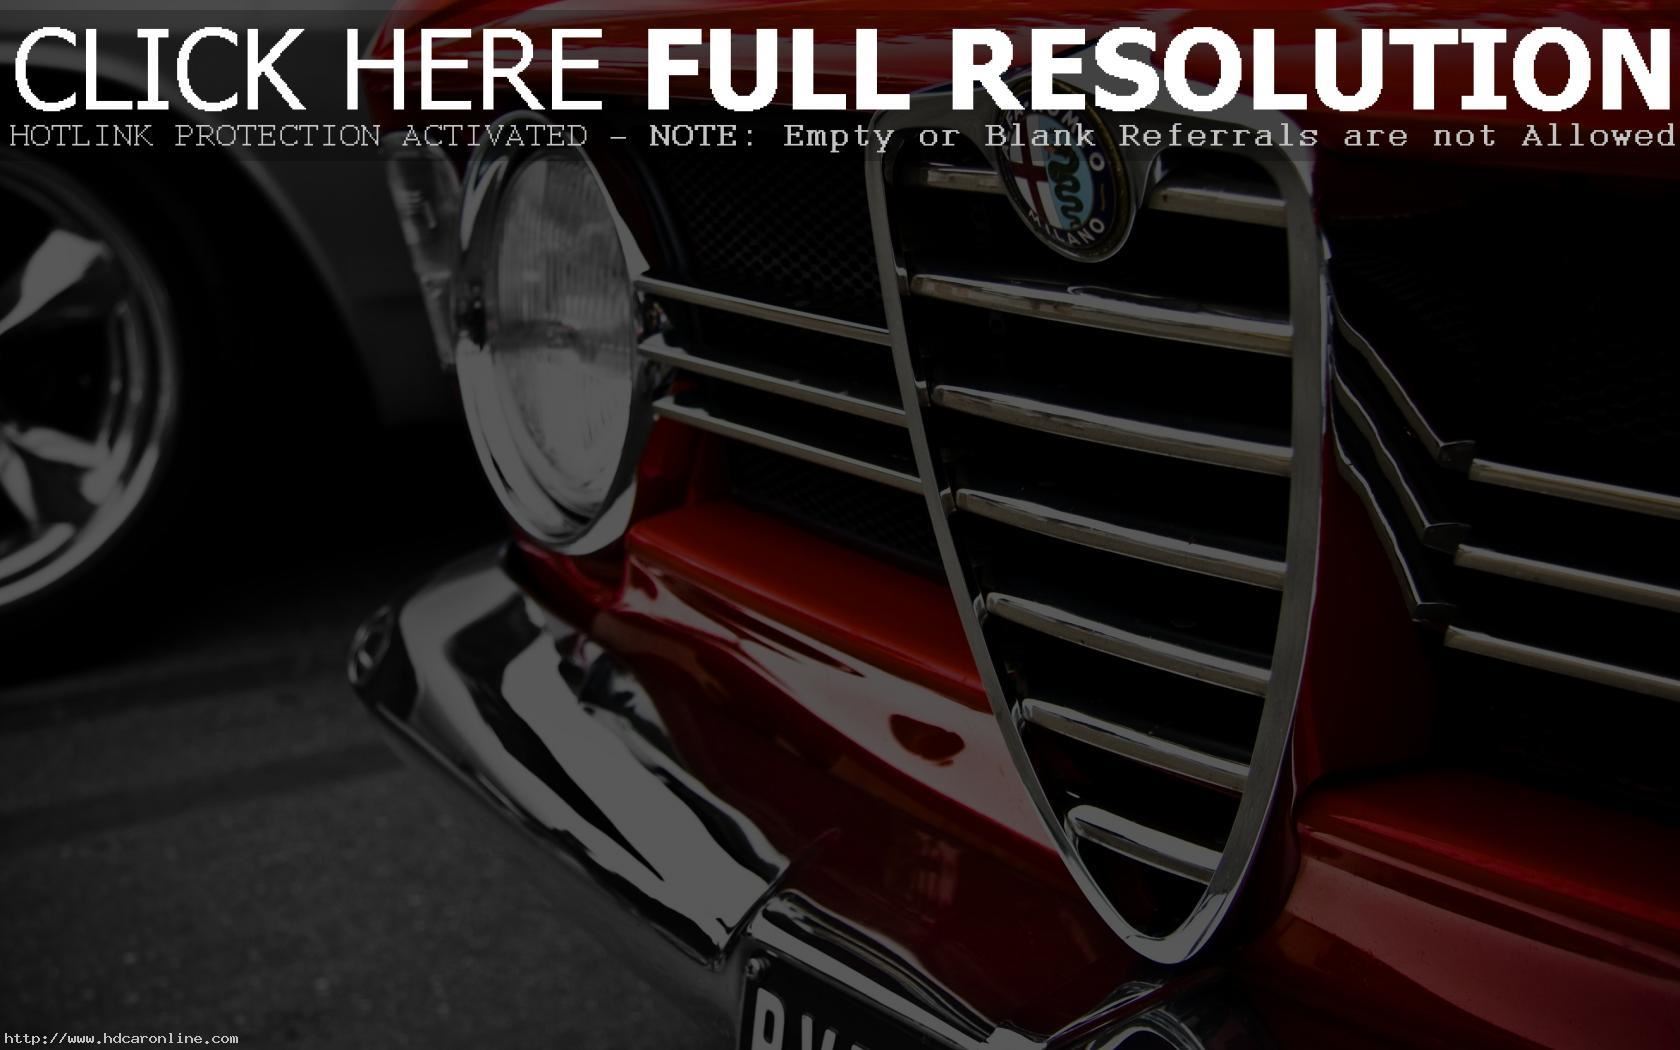 Alfa Romeo Wallpapers